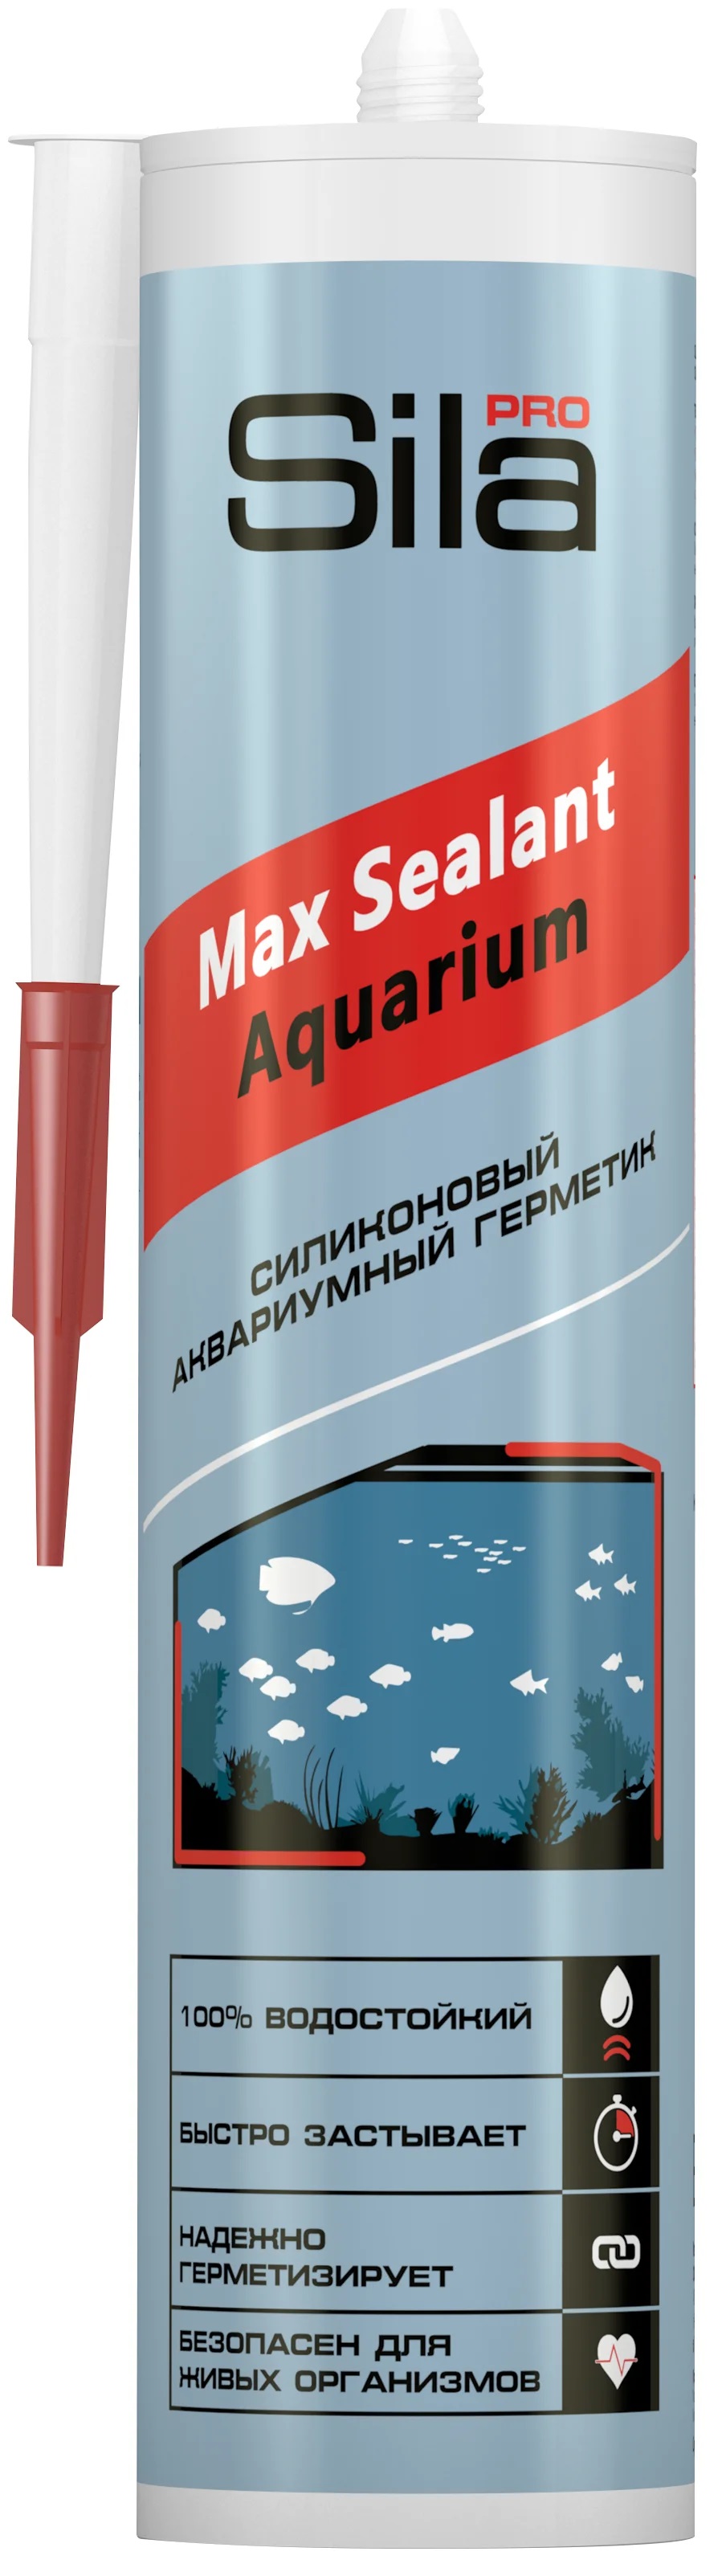 Аквариумный герметик Sila Pro Max Sealant Aquarium термоустойчивый черный 290мл SSAQBL0290